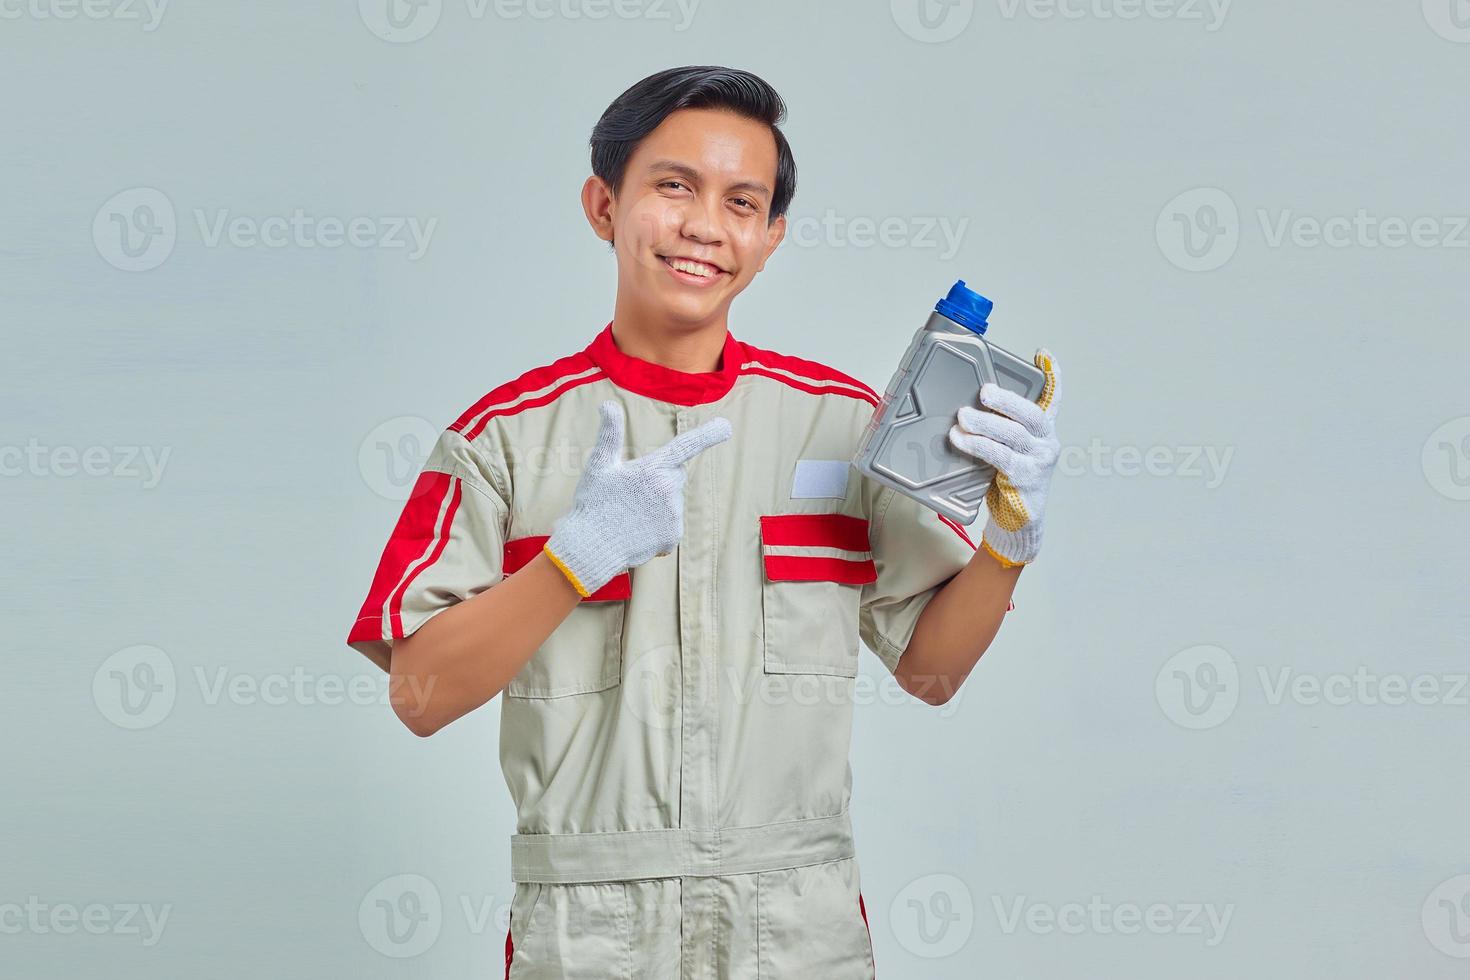 Retrato de hombre guapo sonriente vestido con uniforme de mecánico mostrando botella de plástico de aceite de motor sobre fondo gris foto